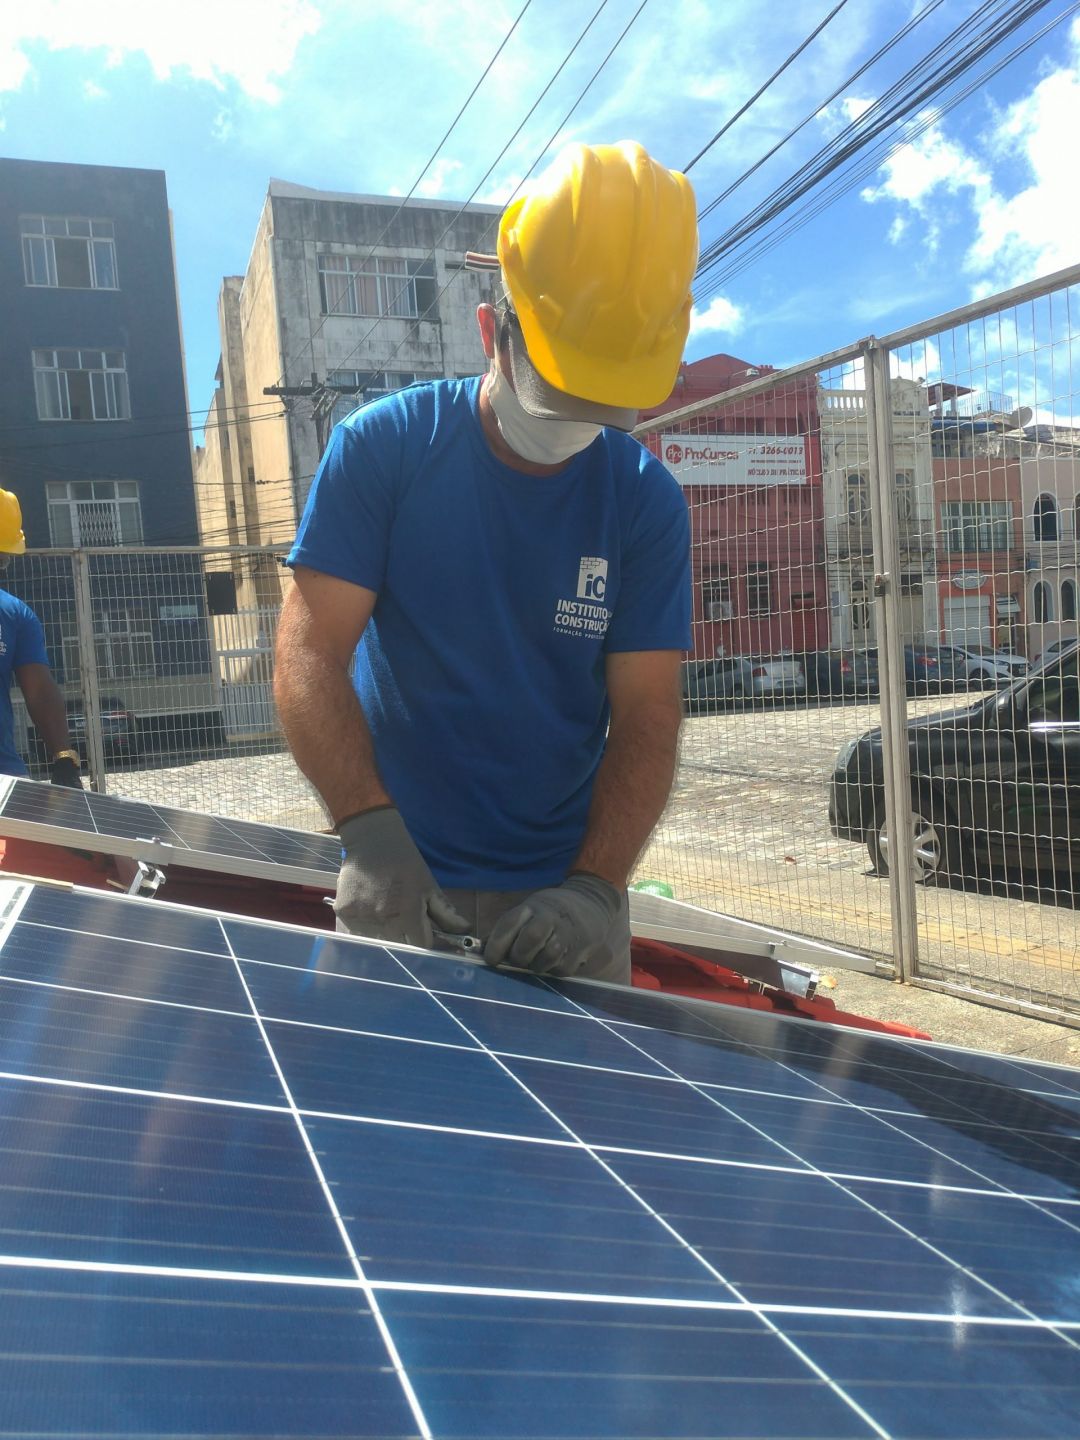 Ribeirão Preto – Curso Instalador de Energia Solar Fotovoltaica + NR35